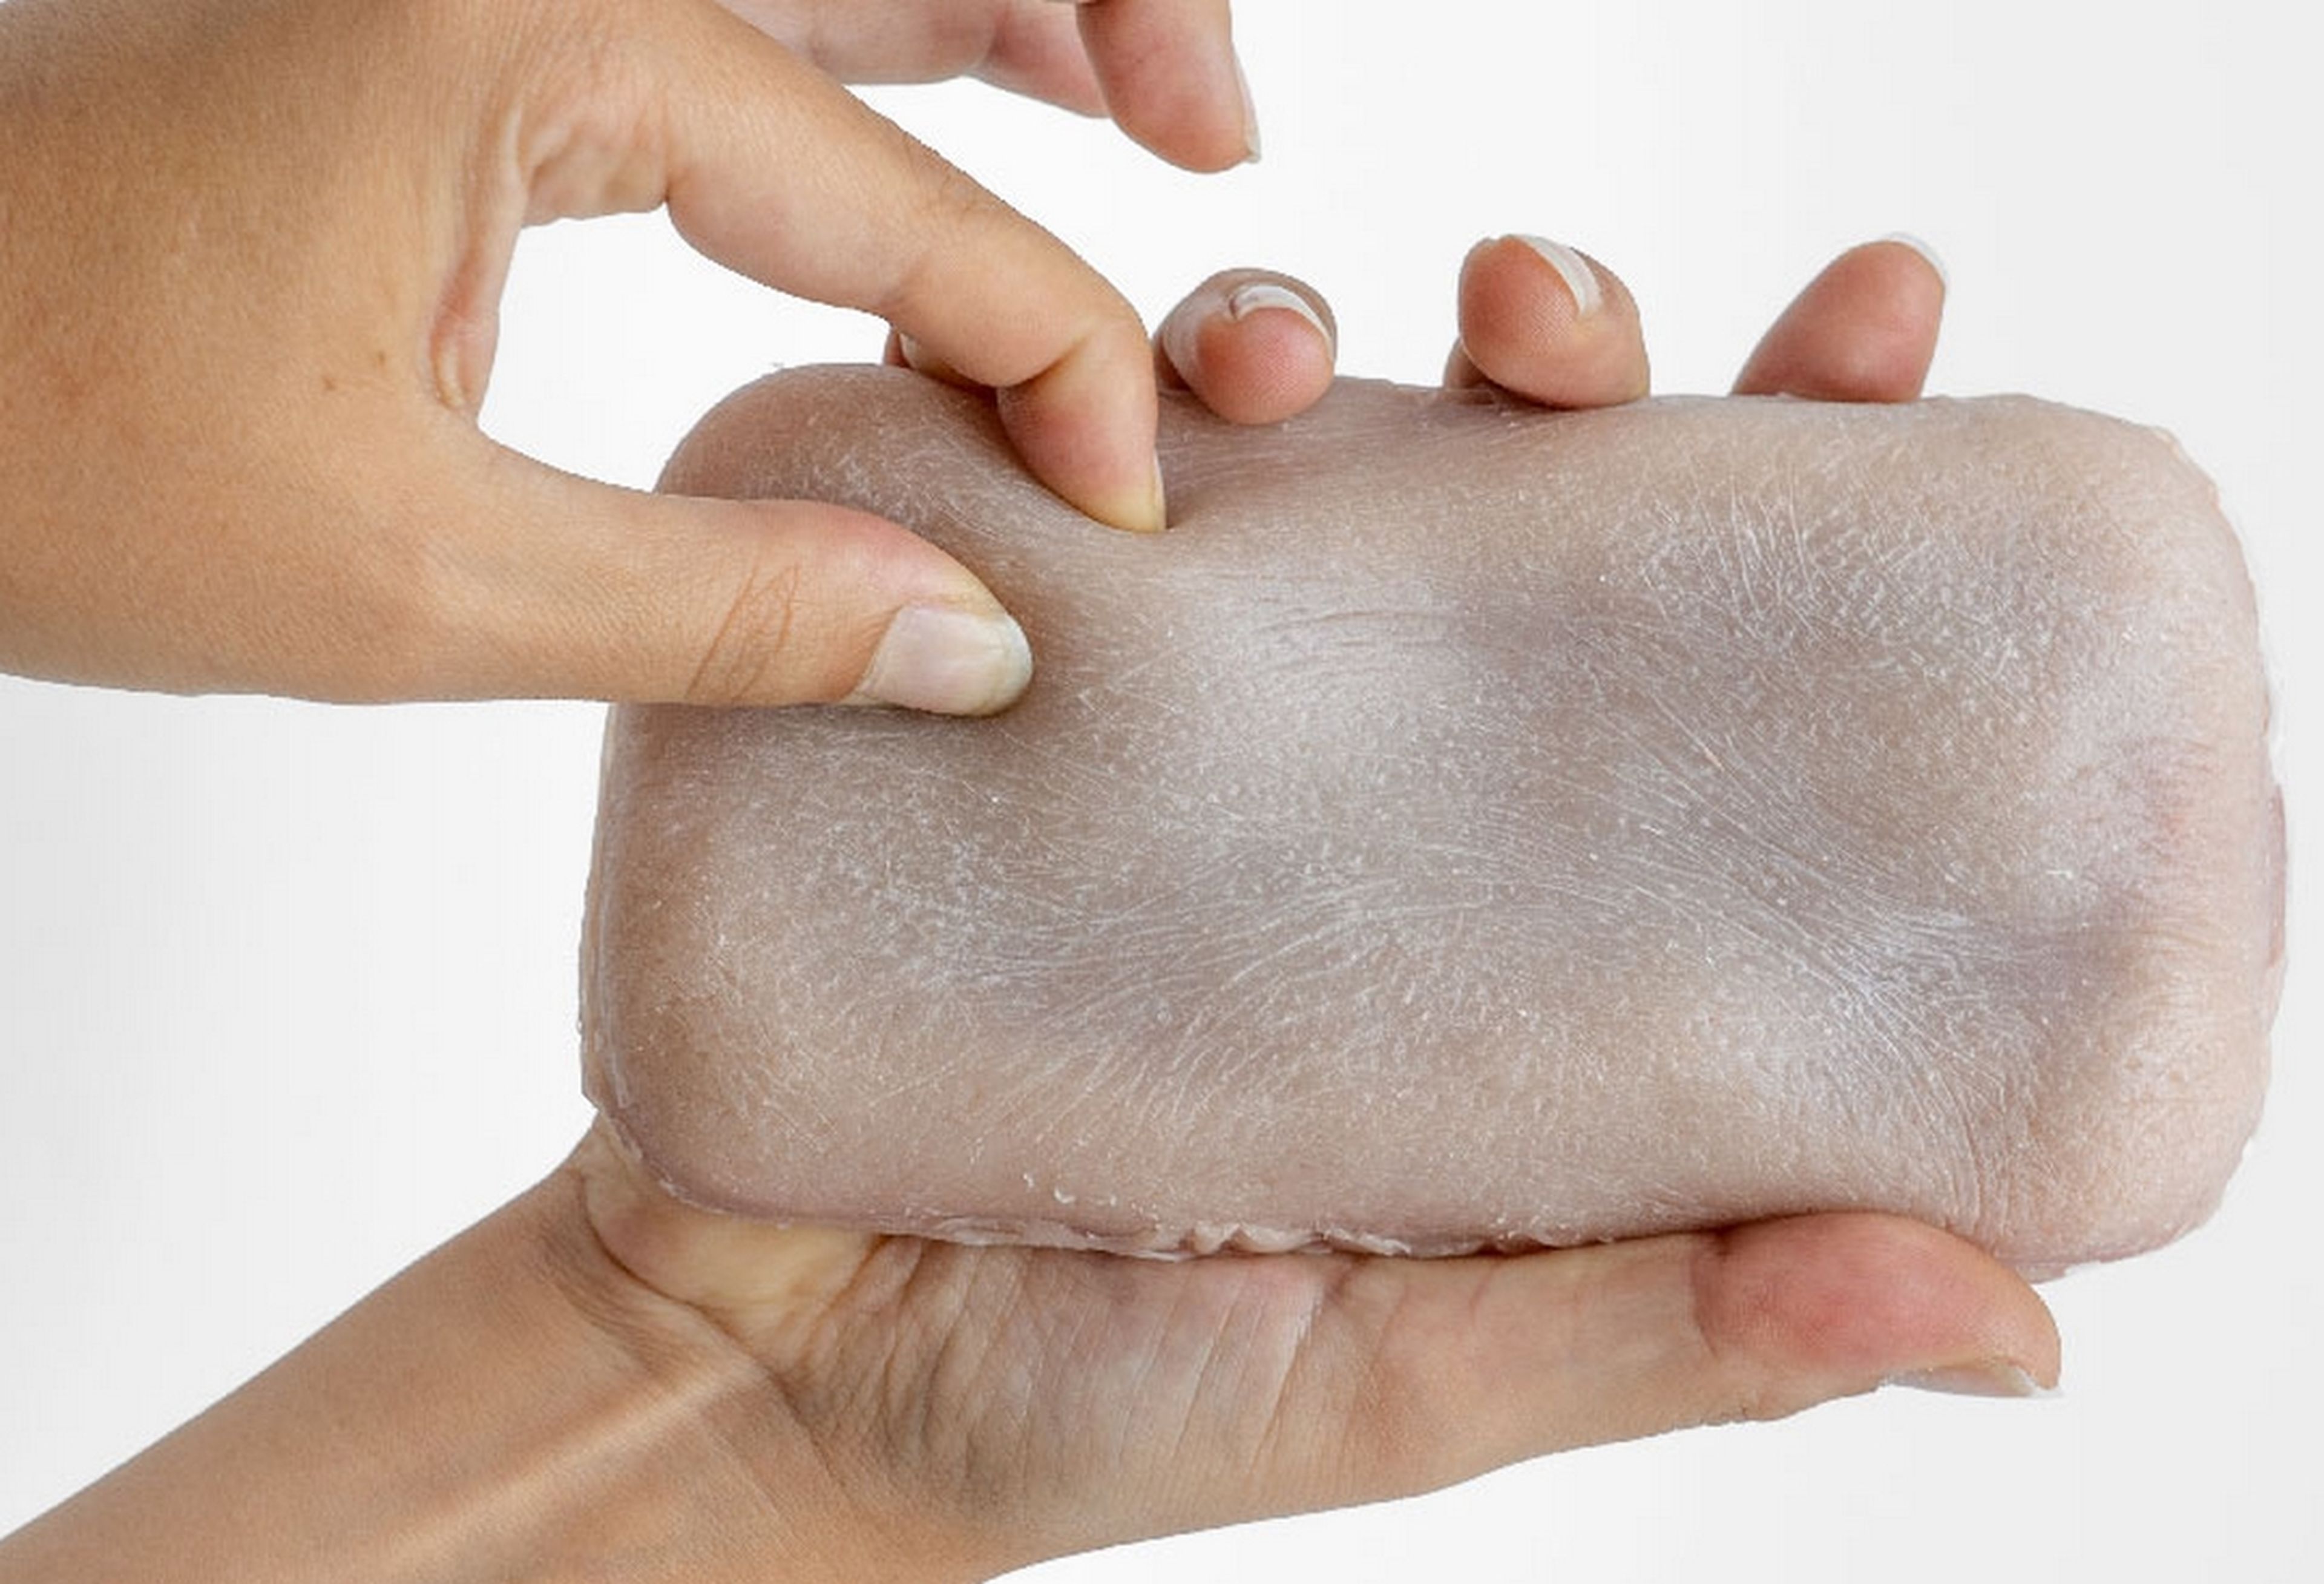 Crean una funda con piel artificial que puedes pellizcar o acariciar para controlar el móvil